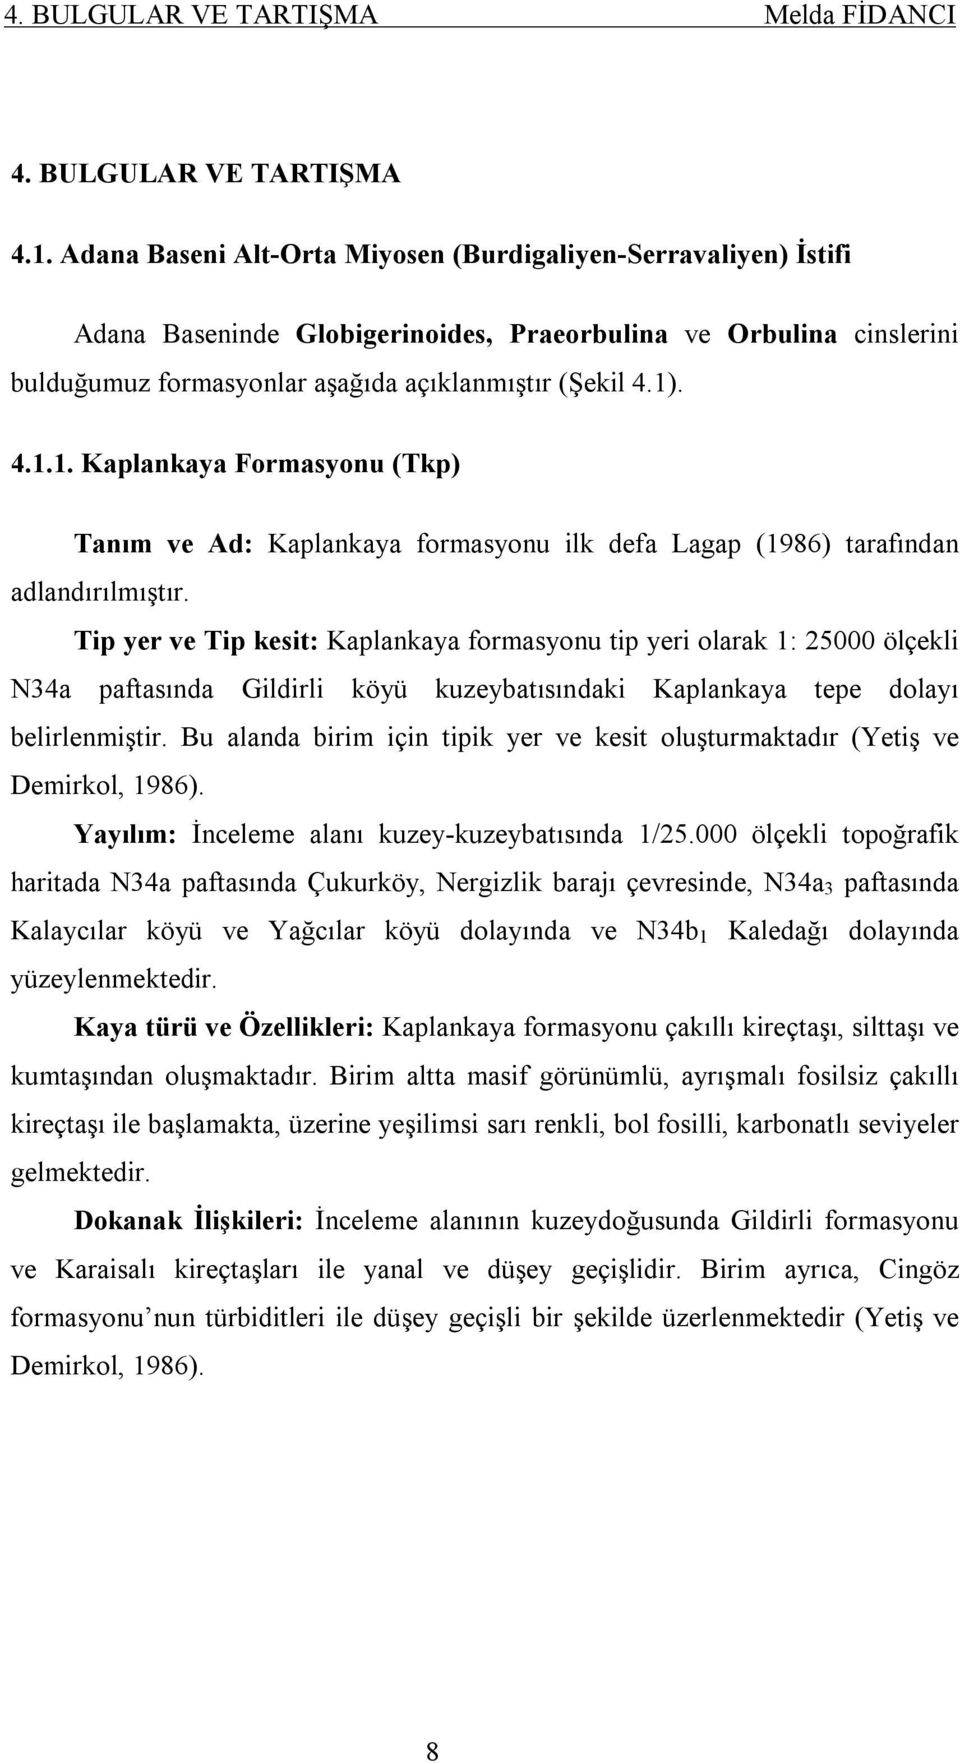 . 4.1.1. Kaplankaya Formasyonu (Tkp) Tanım ve Ad: Kaplankaya formasyonu ilk defa Lagap (1986) tarafından adlandırılmıştır.